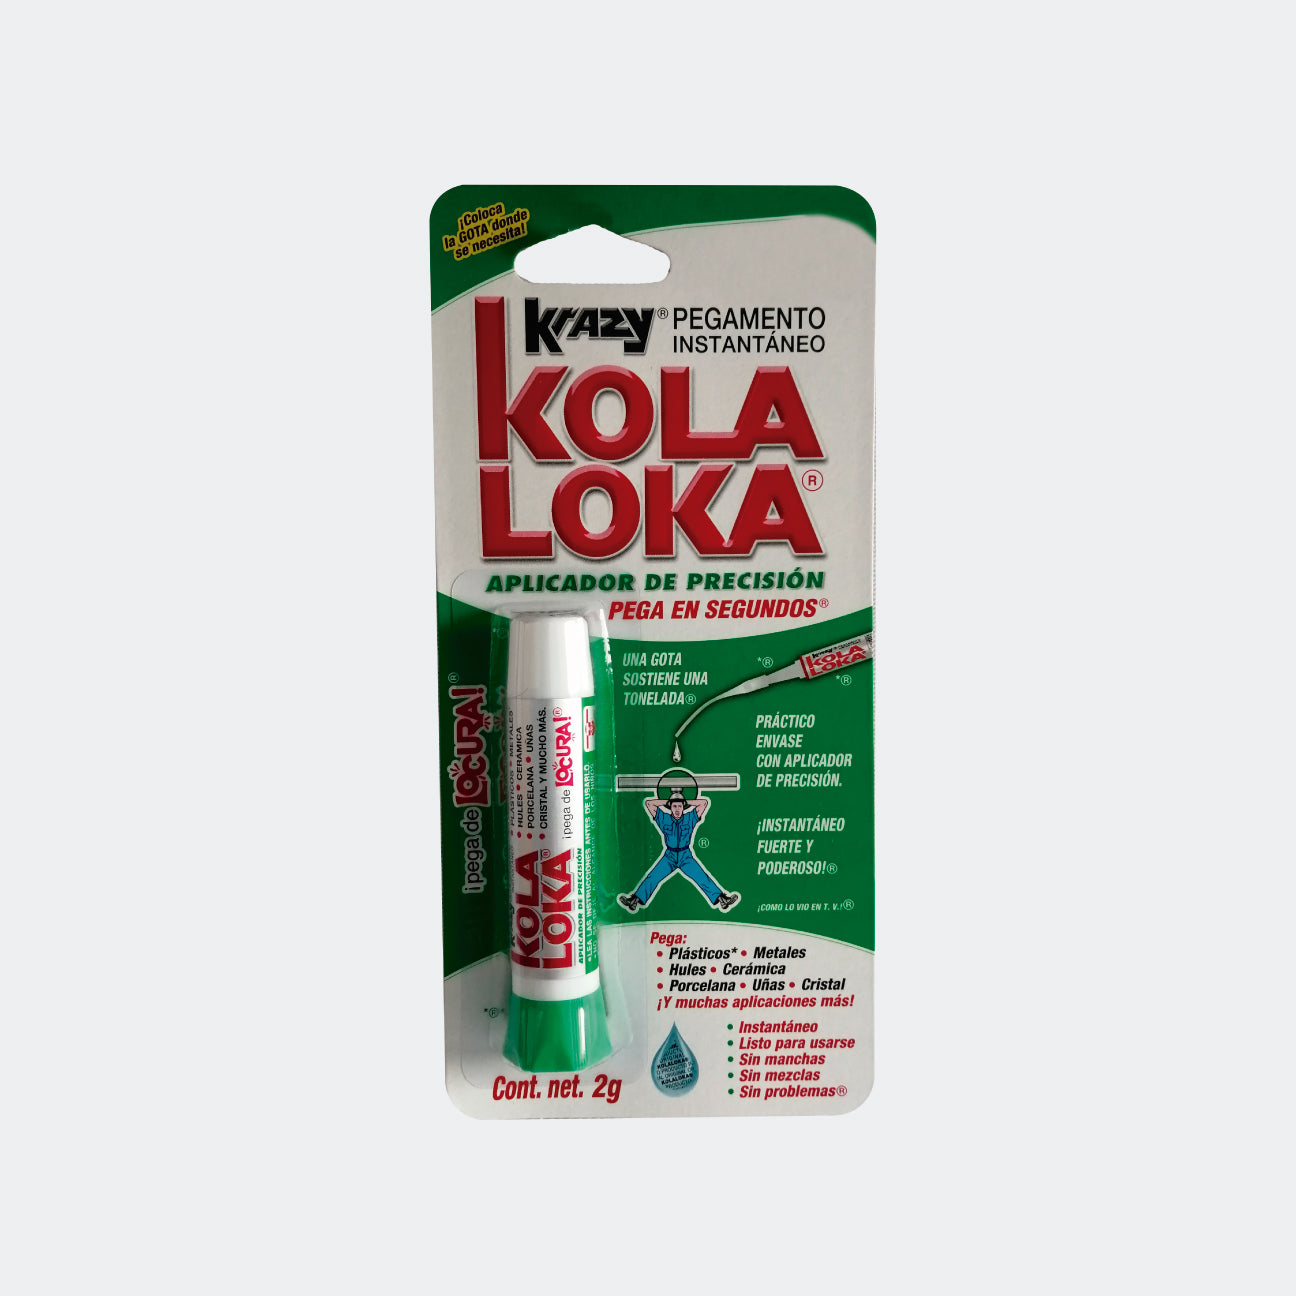 Industrias Kola Loka (@KolaLoka) / X